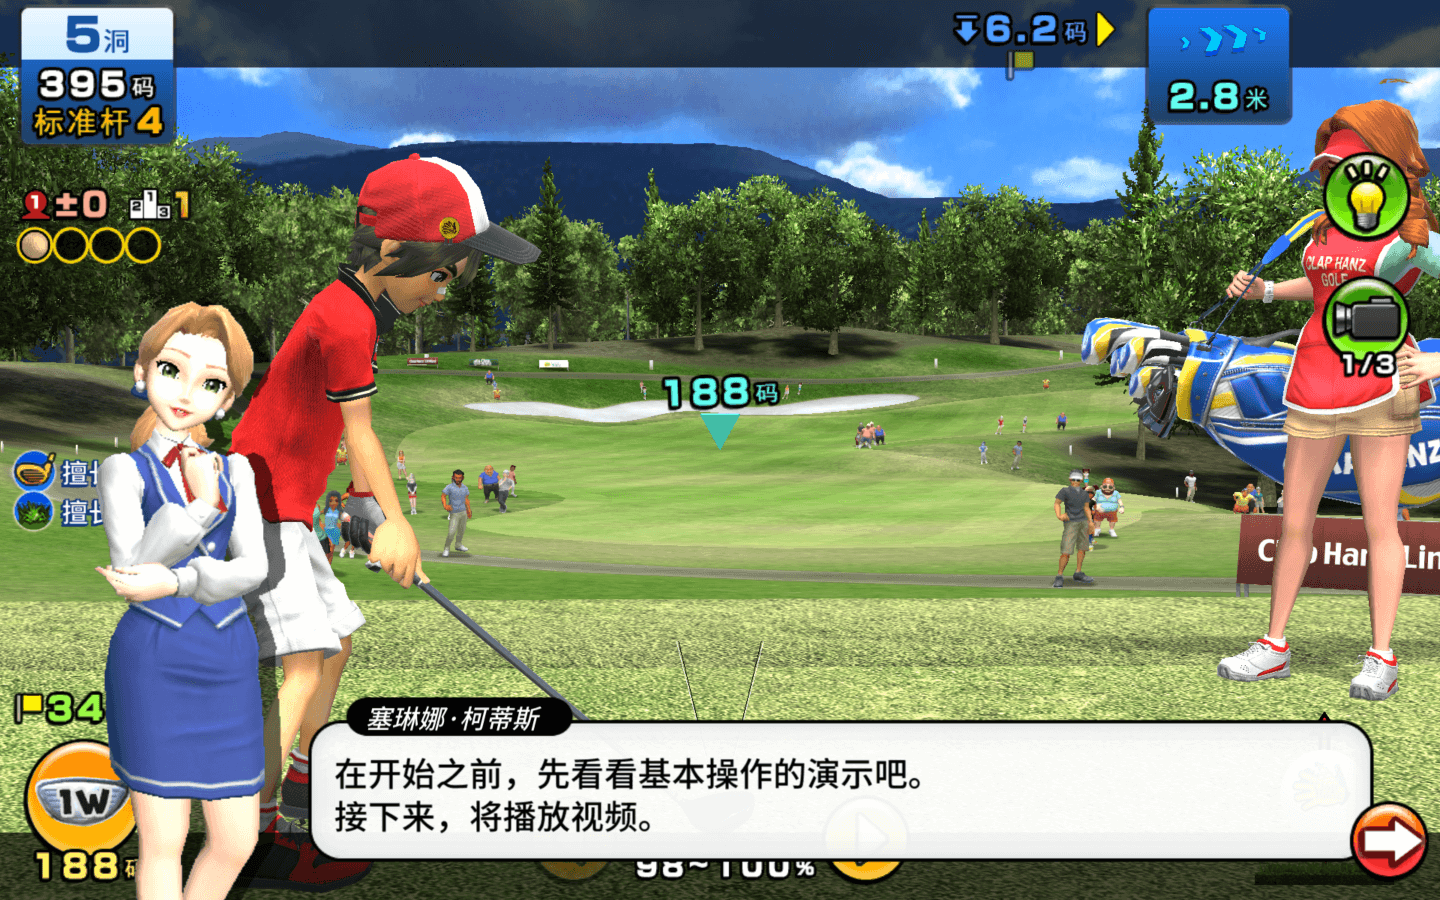 轻松高尔夫 Easy Come Easy Golf for Mac v1.9.2 中文原生版